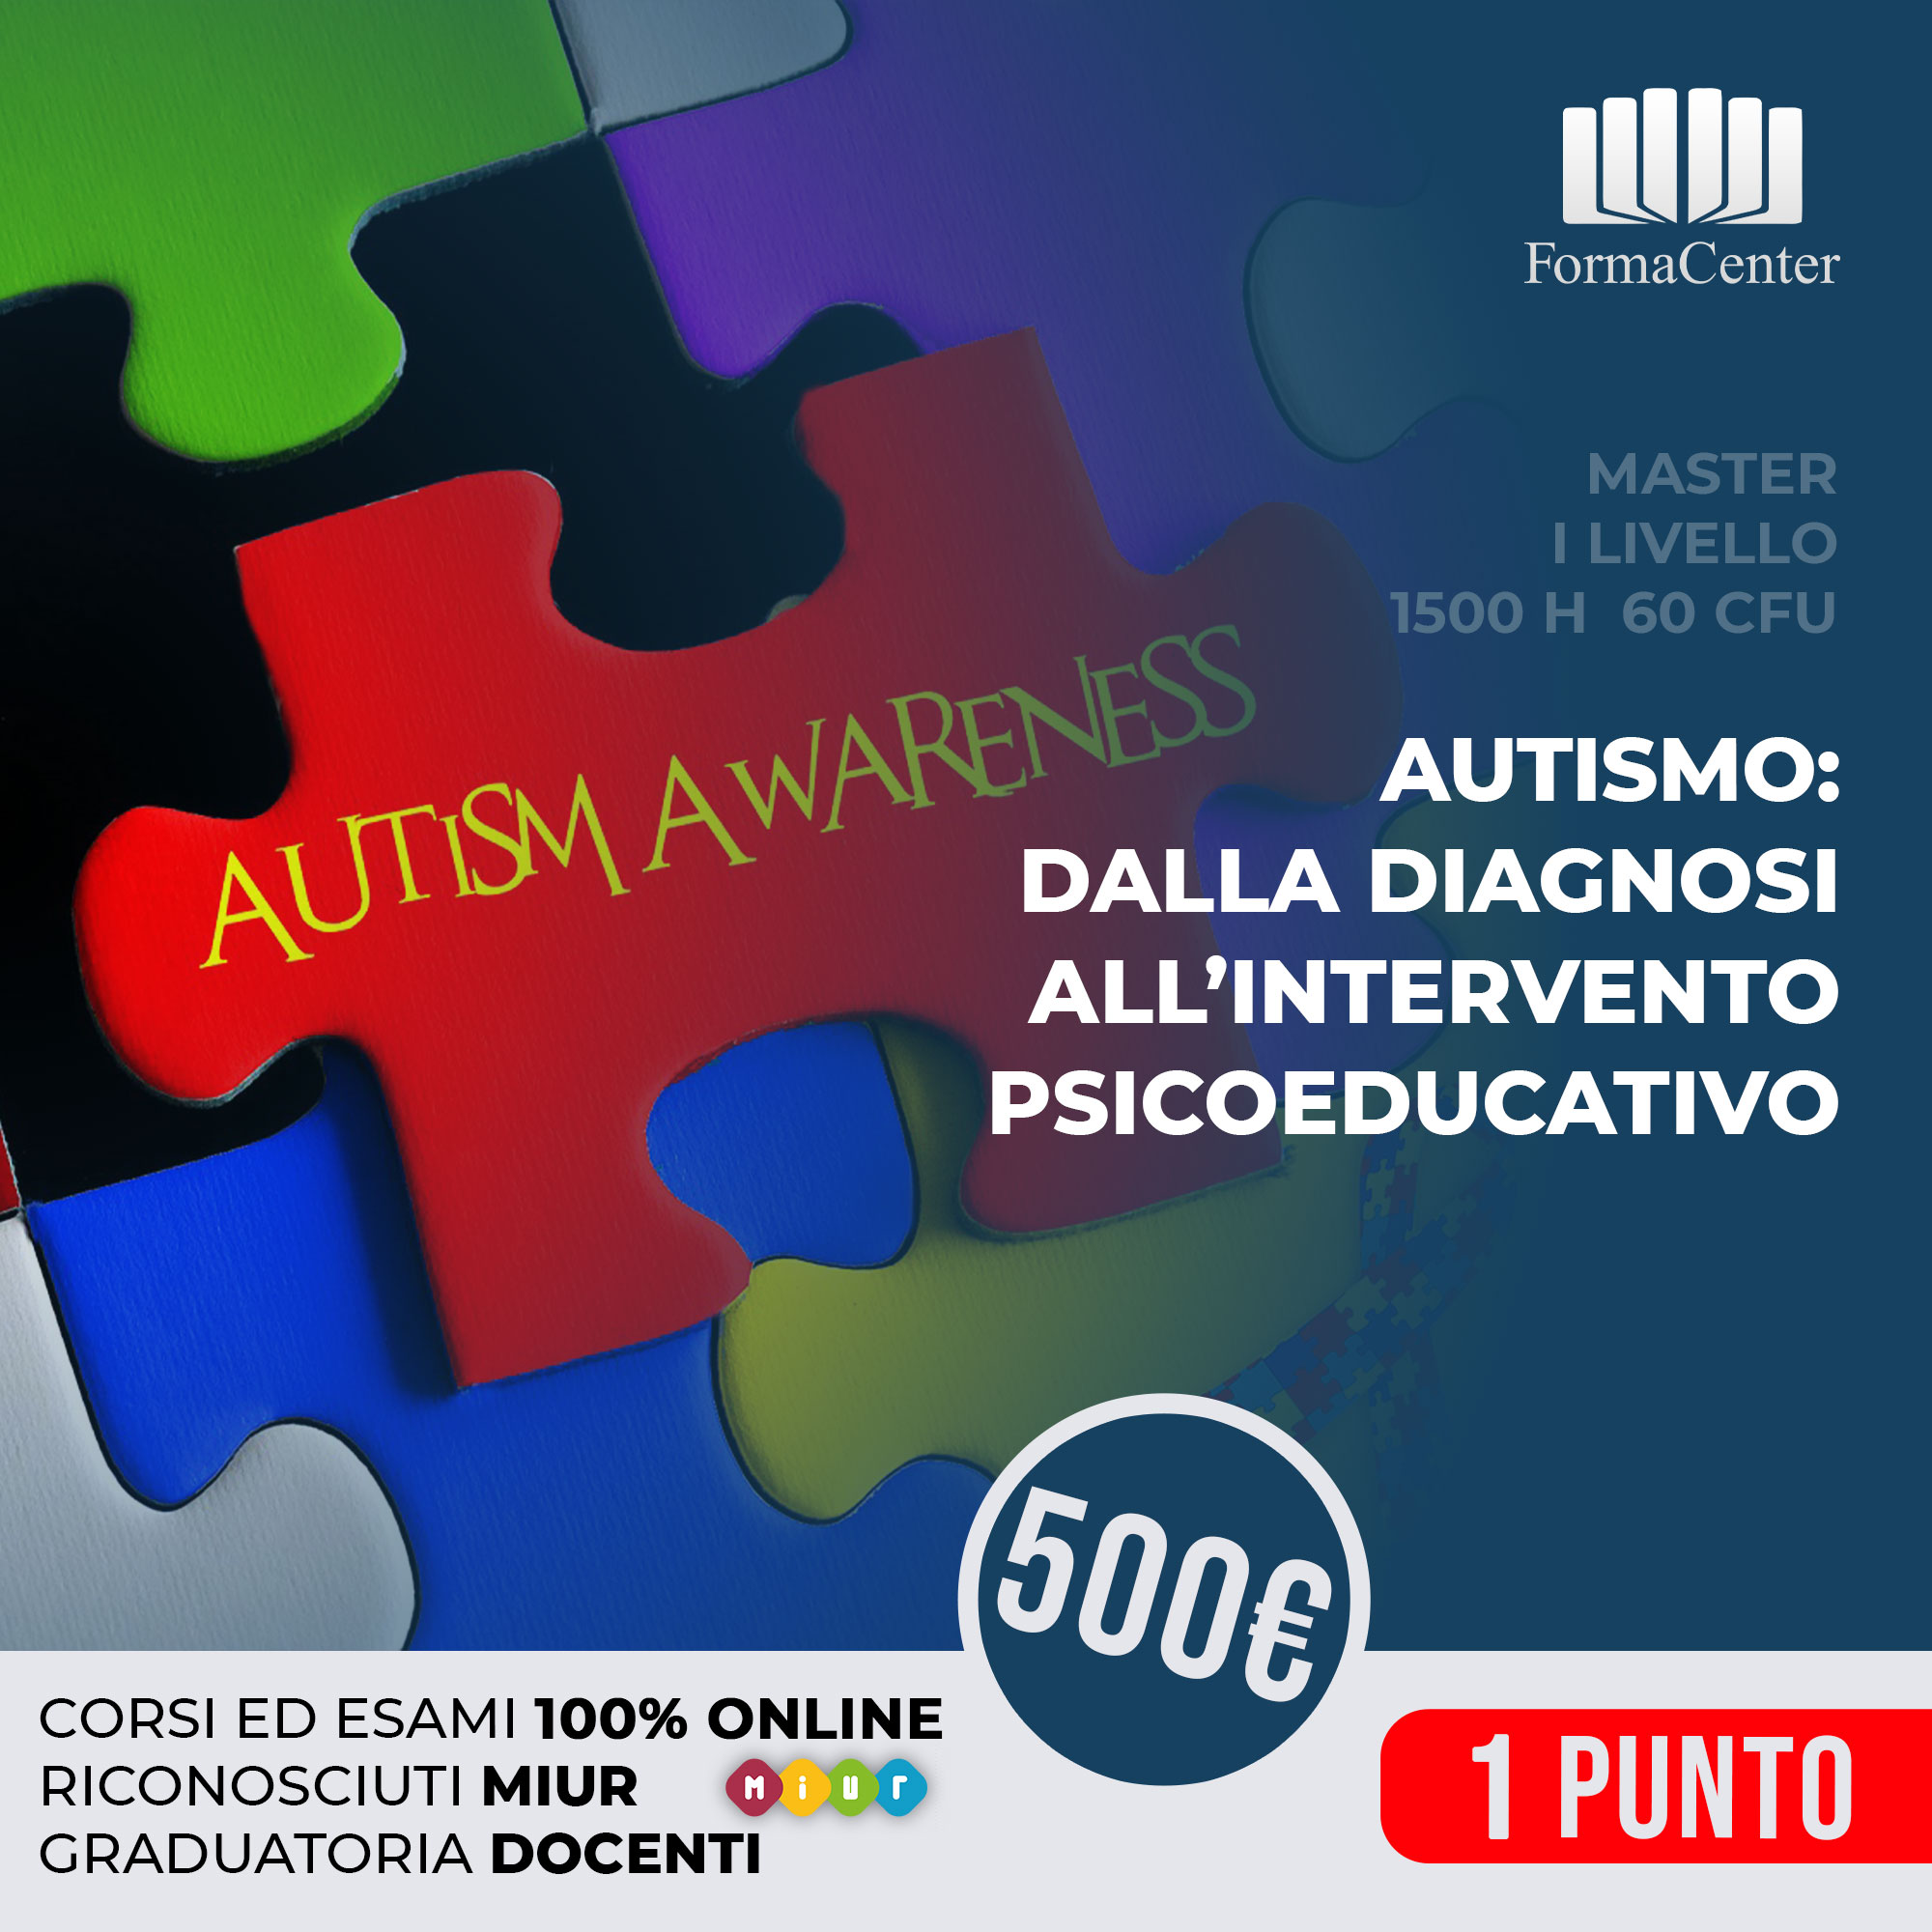 AAP1 - Autismo: dalla diagnosi all'intervento psicoeducativo